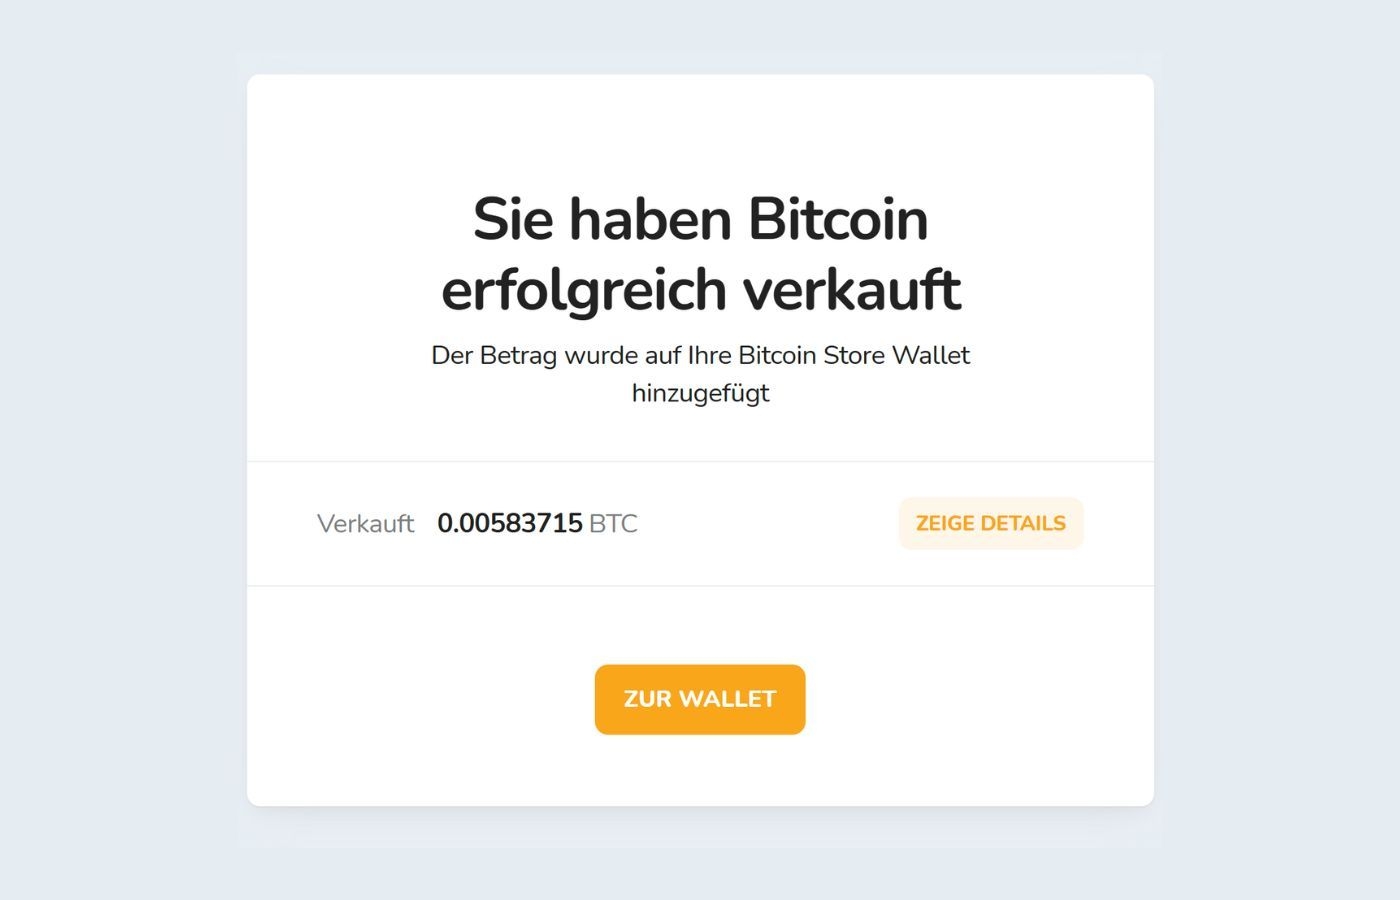 Benachrichtigung über den erfolgreichen Verkauf von Bitcoin (BTC) an der Bitcoin Store Kryptowährungsbörse.